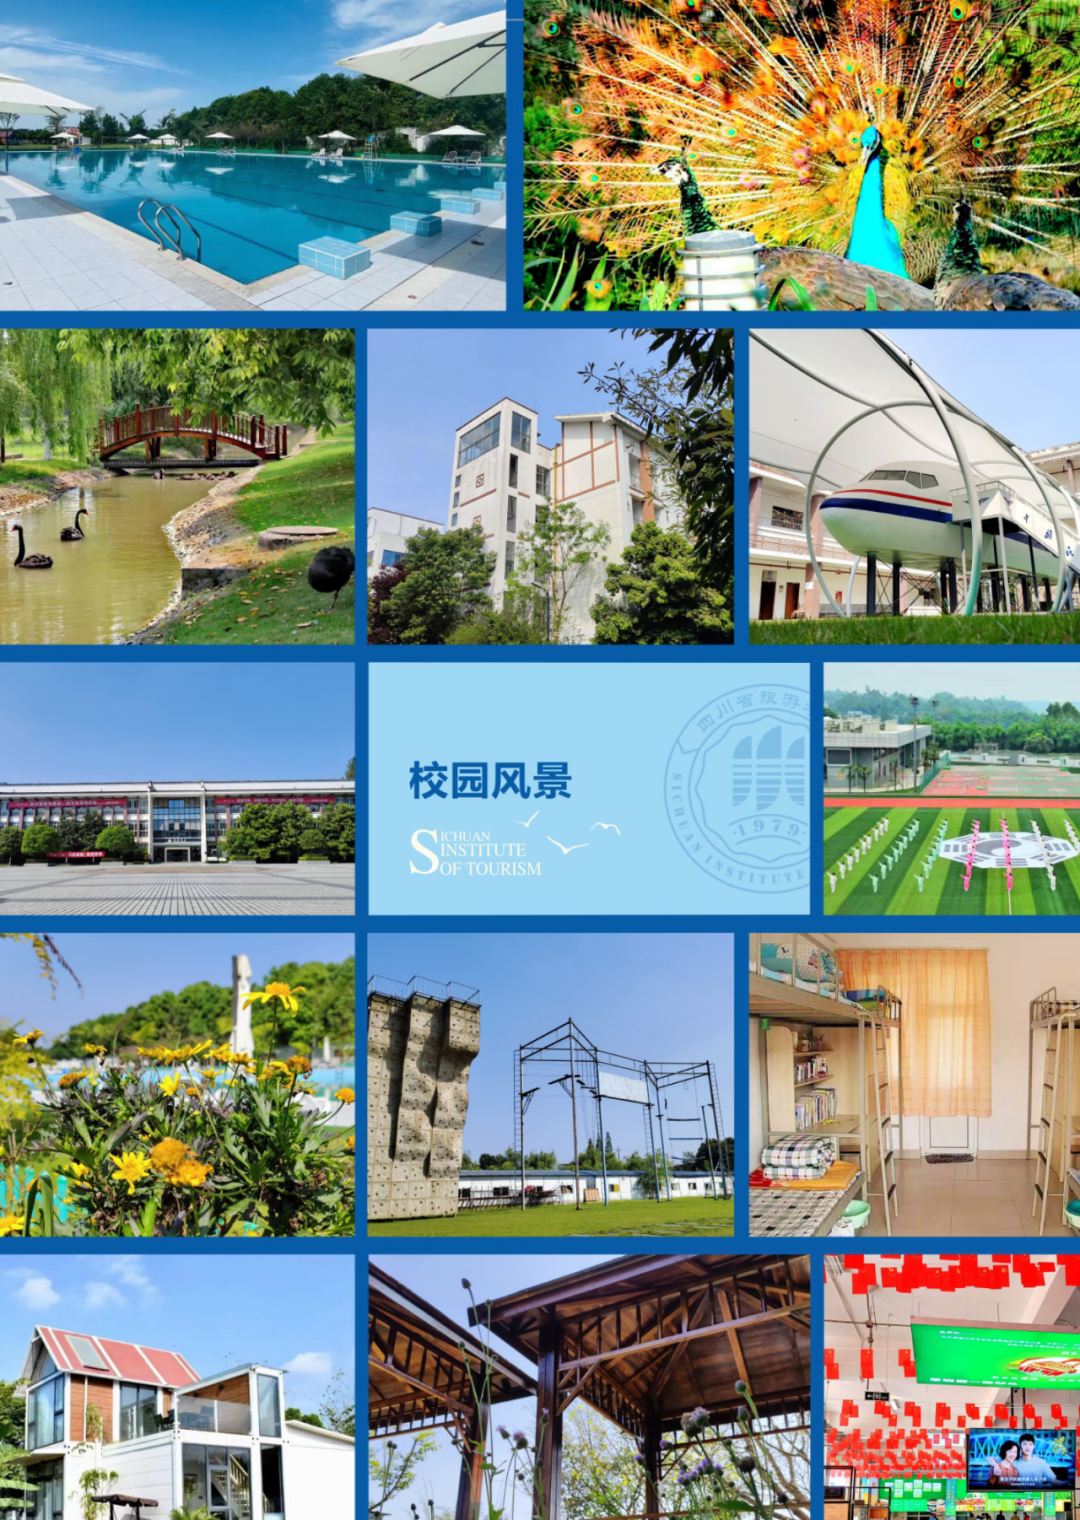 四川省旅游学校2022年招生简章